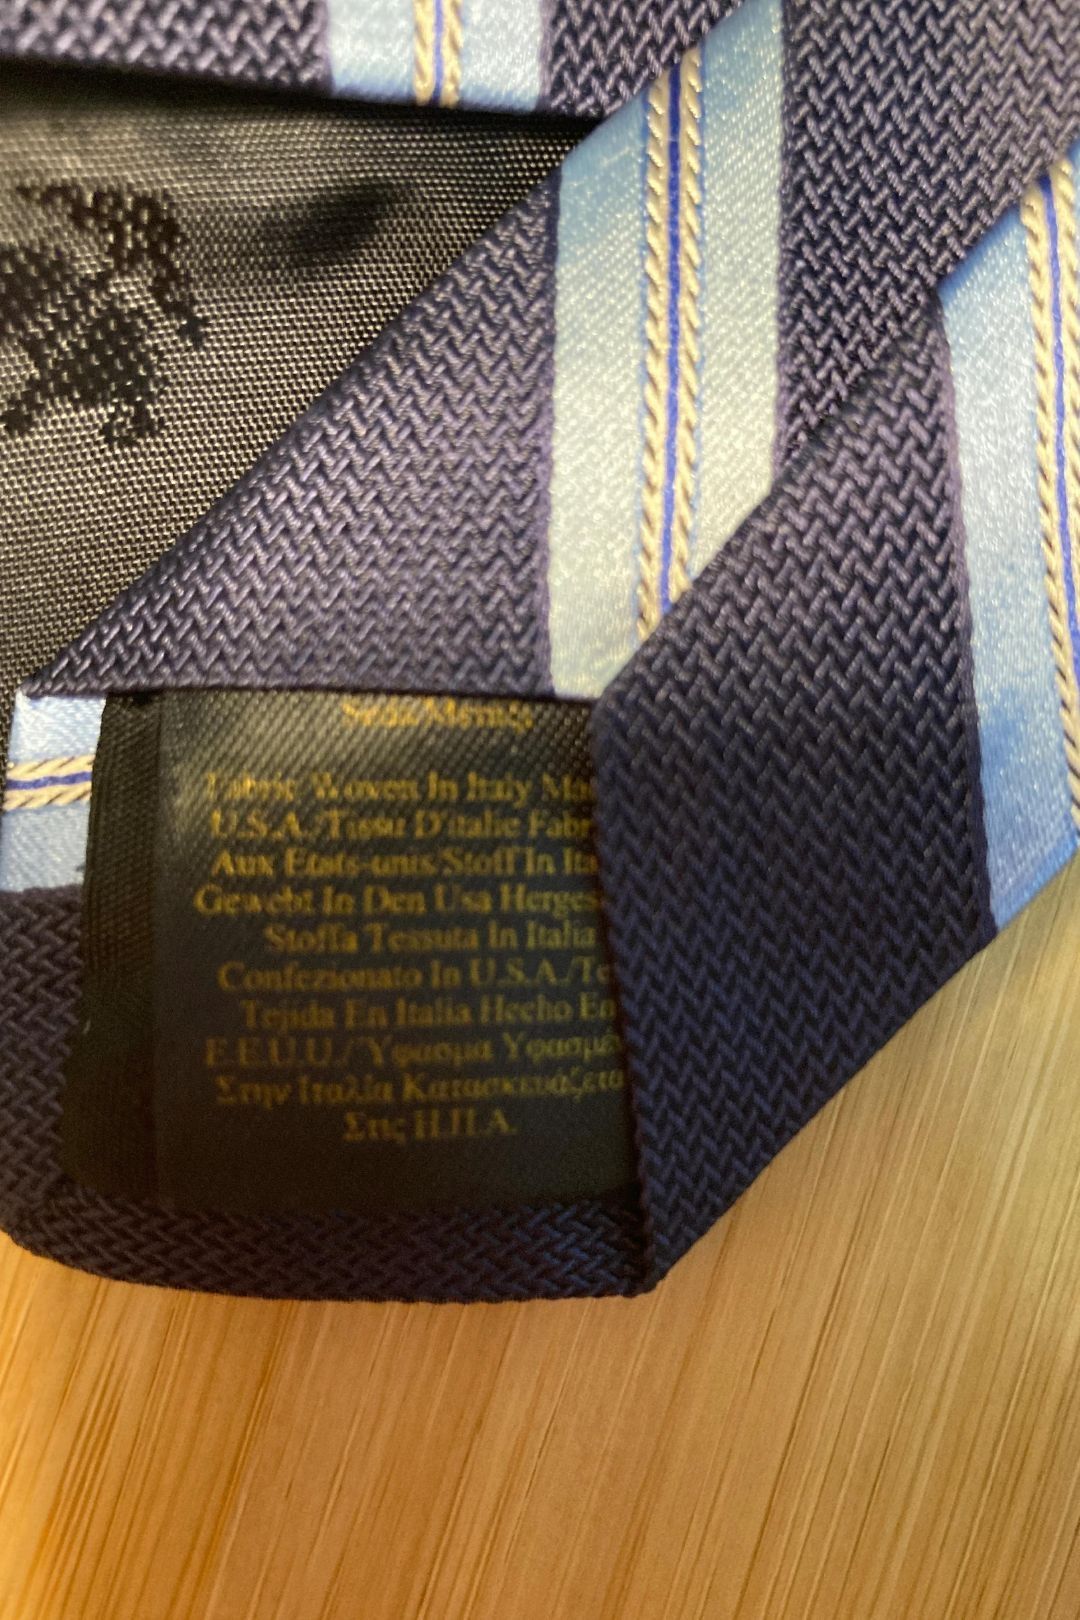 Navy Blue Stripe Preppy Silk Tie